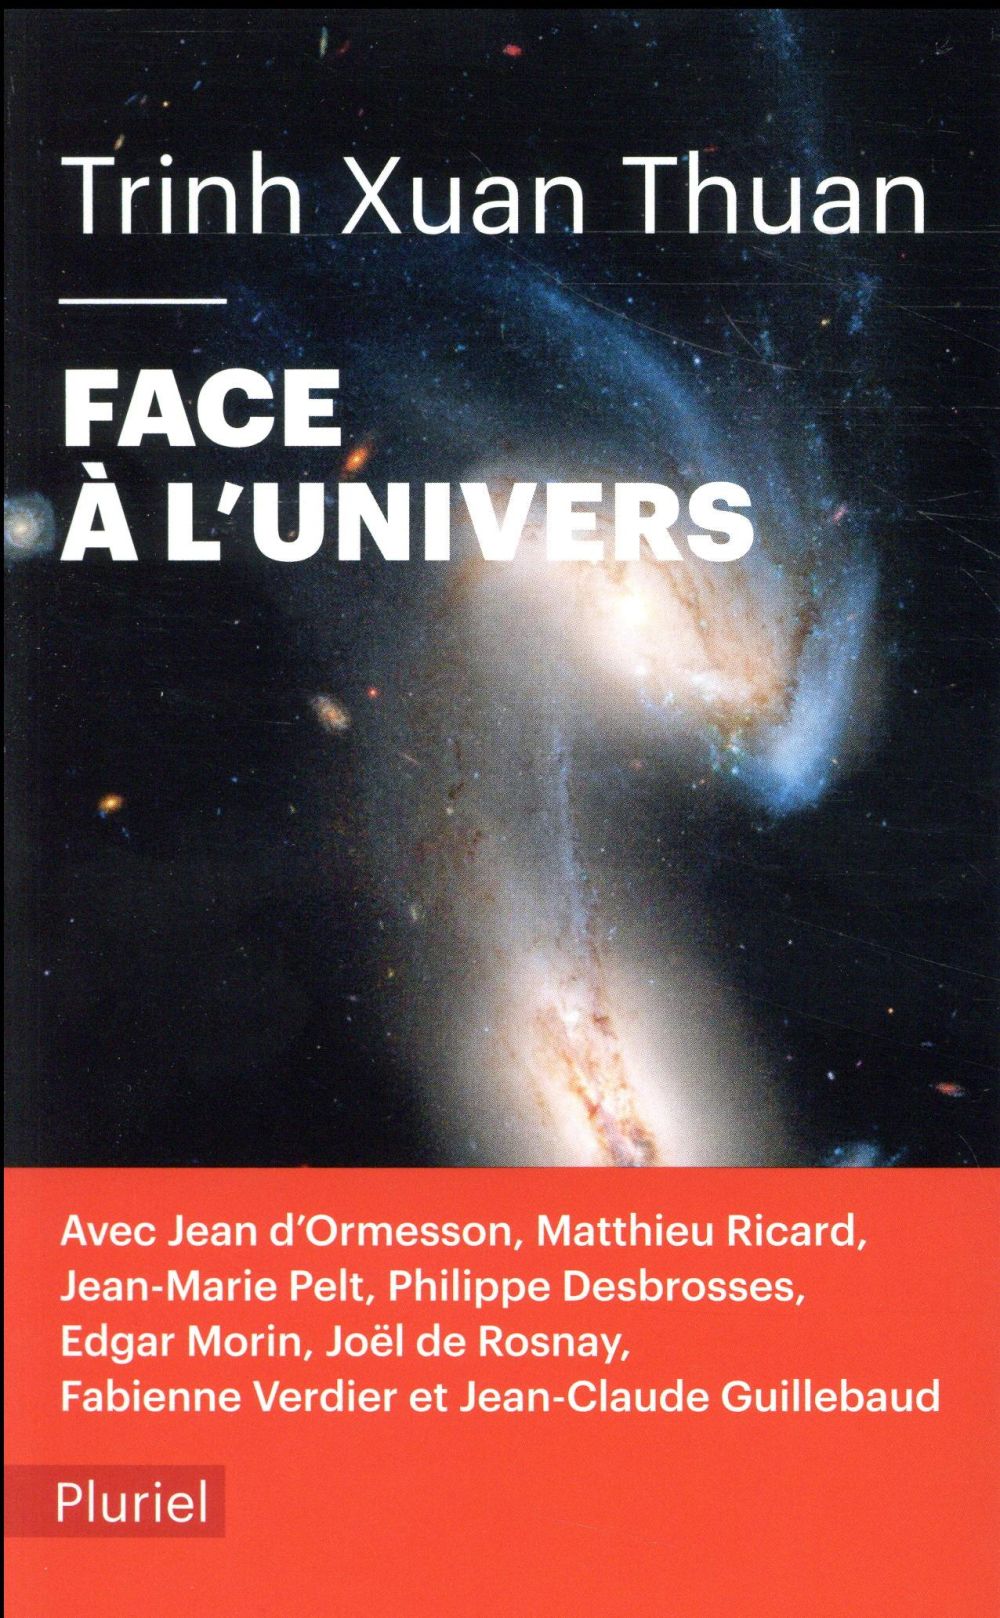 FACE A L'UNIVERS